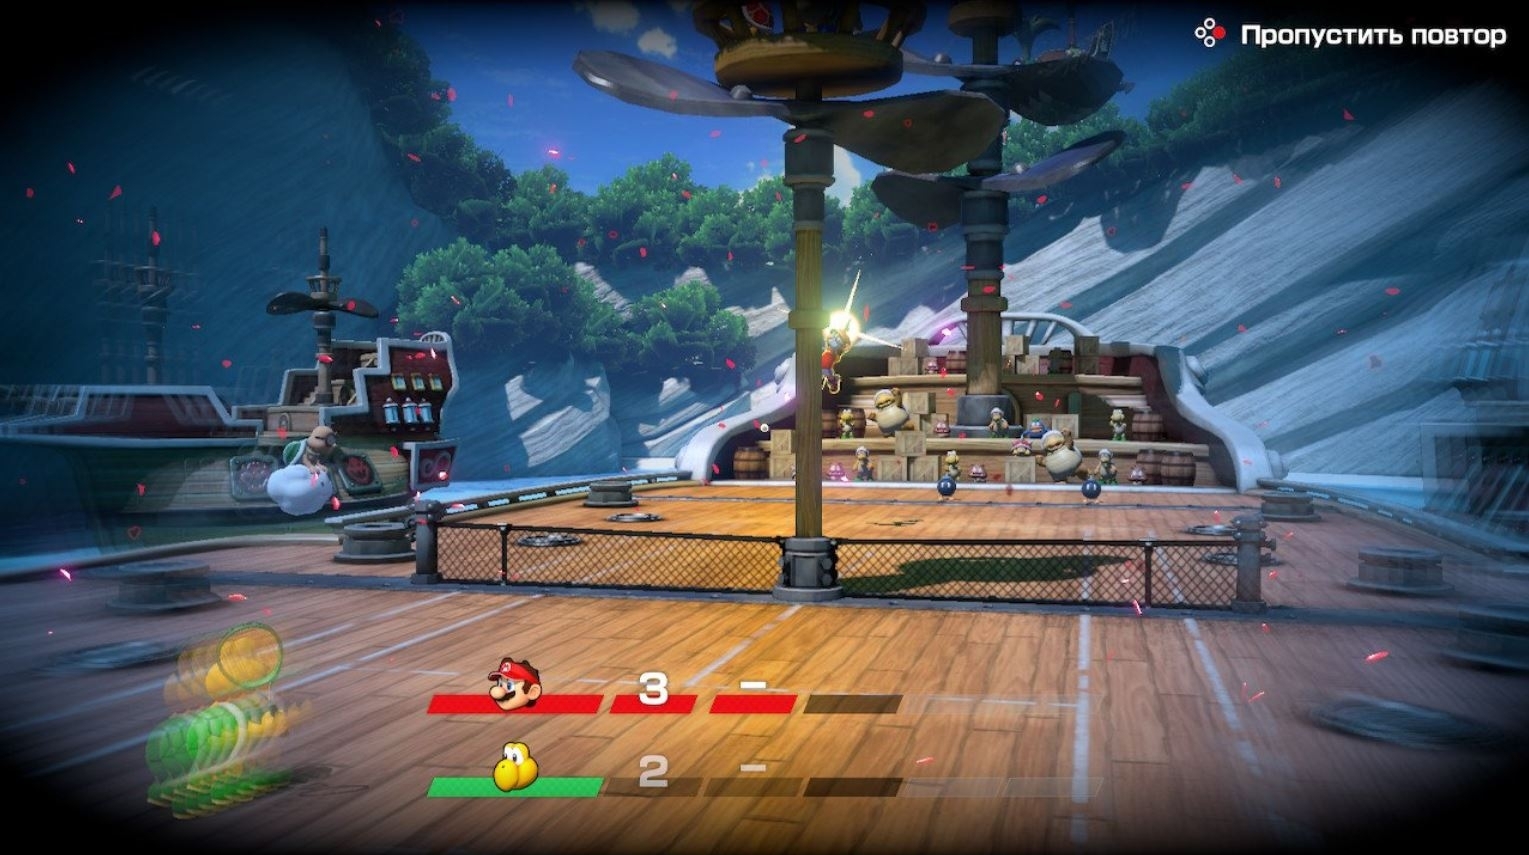 Скриншот из игры Mario Tennis Aces под номером 2